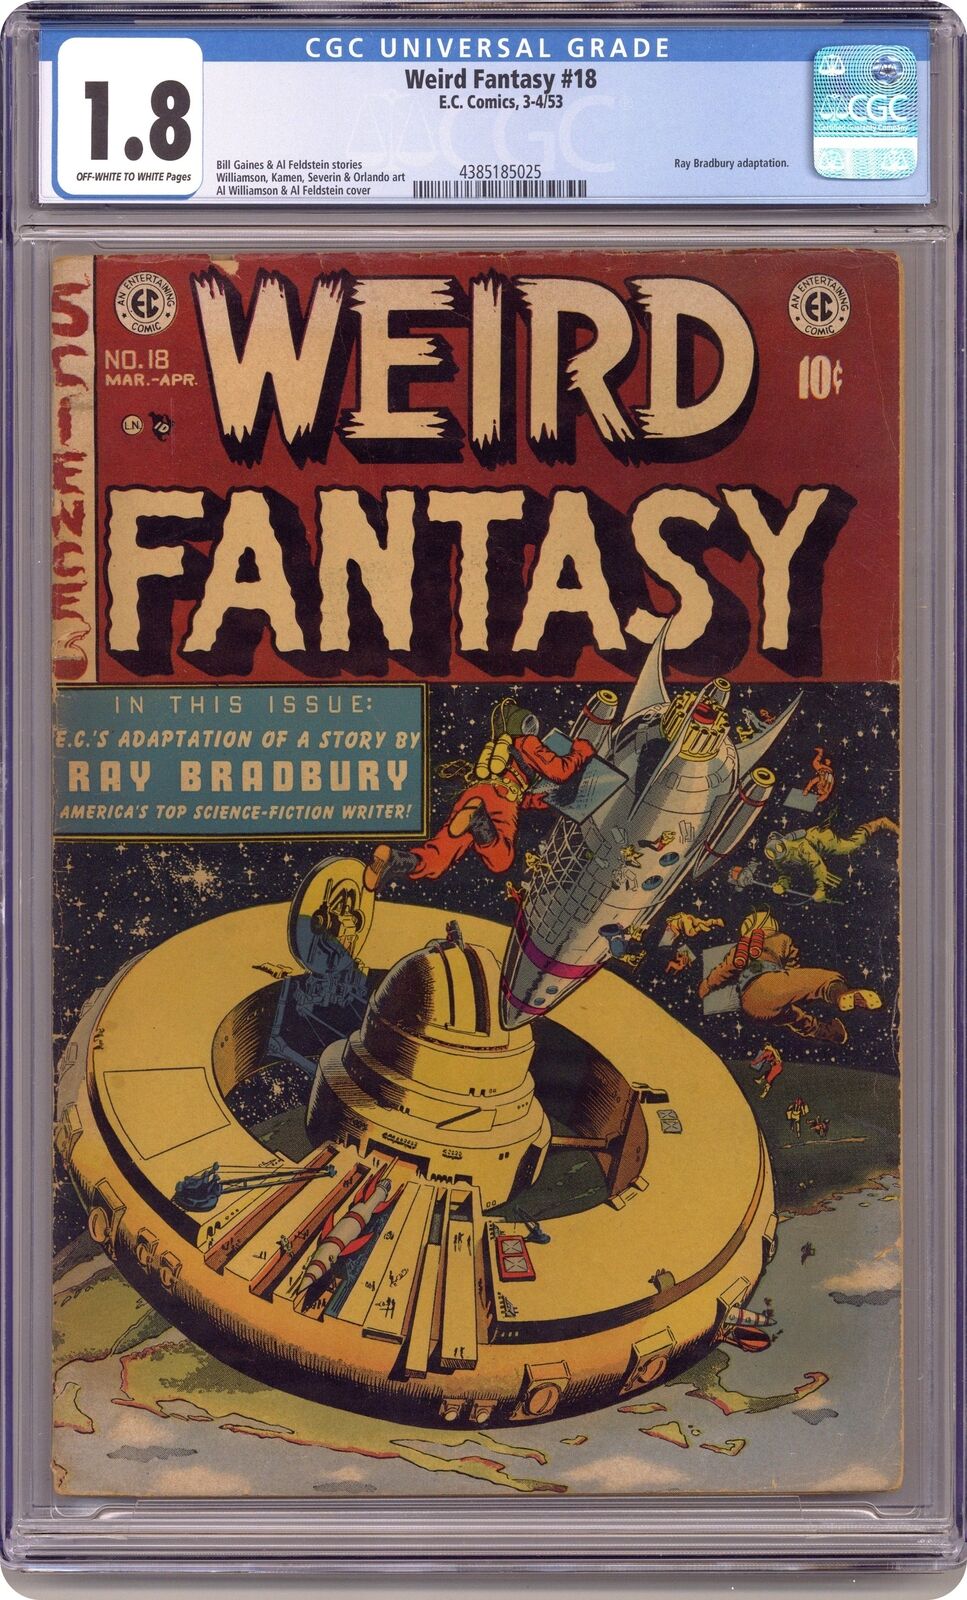 Weird Fantasy #18 CGC 1.8 1953 4385185025